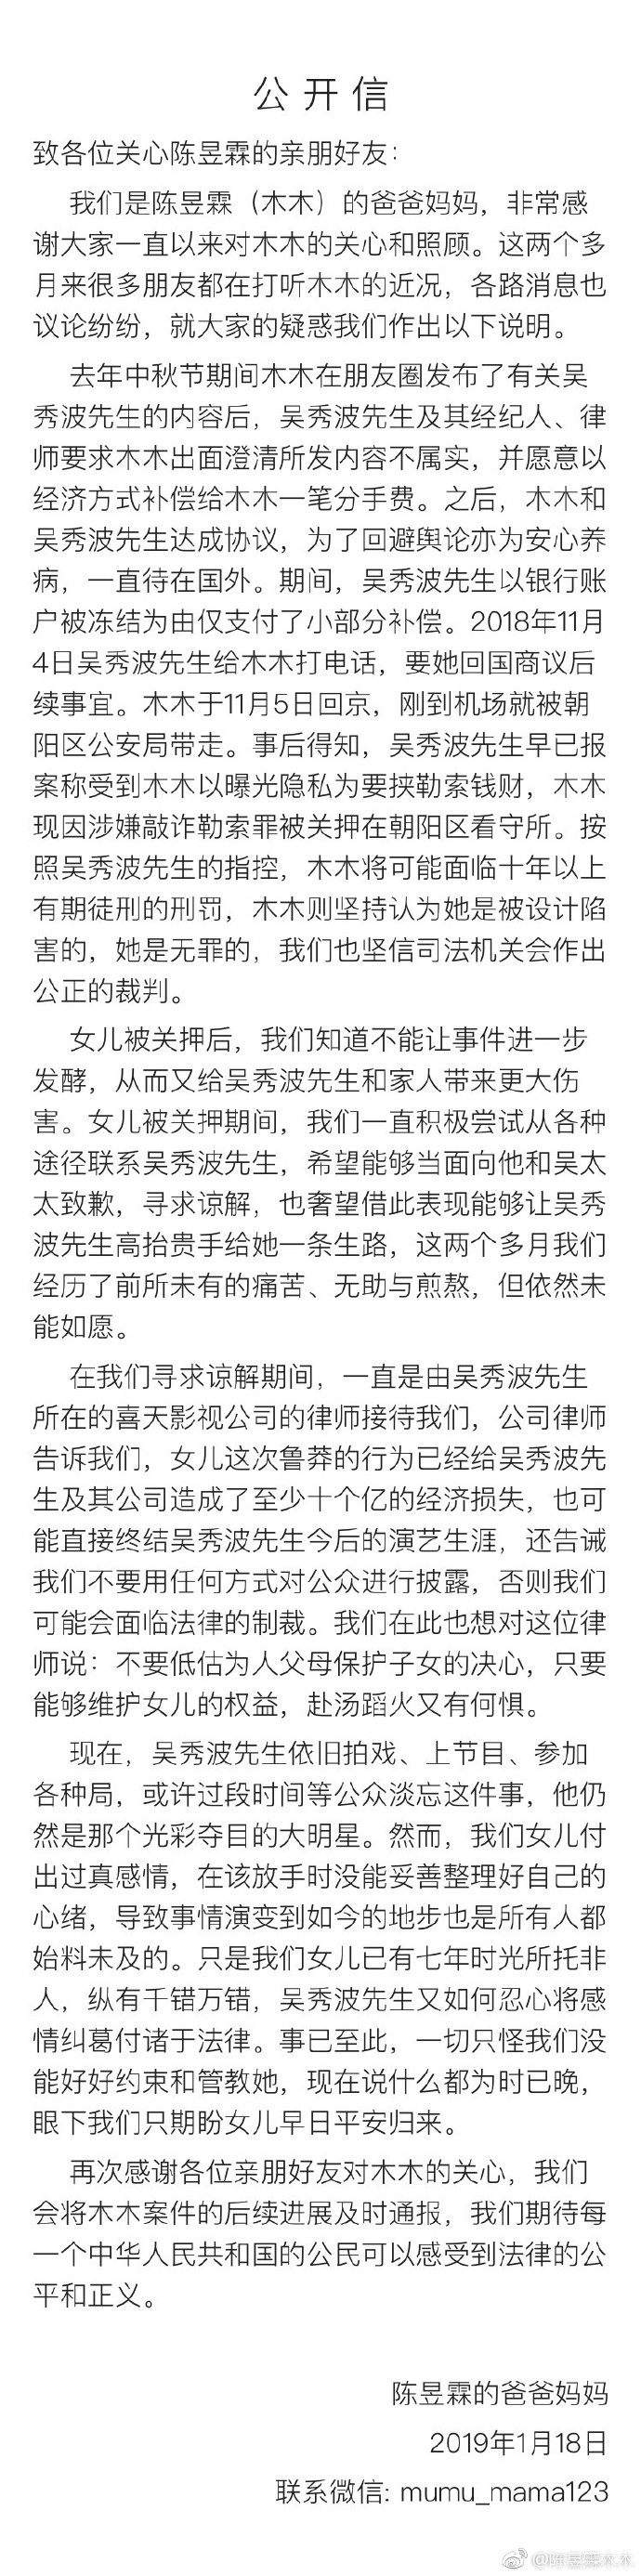 微博账号“陈昱霖木木”发表的公开信